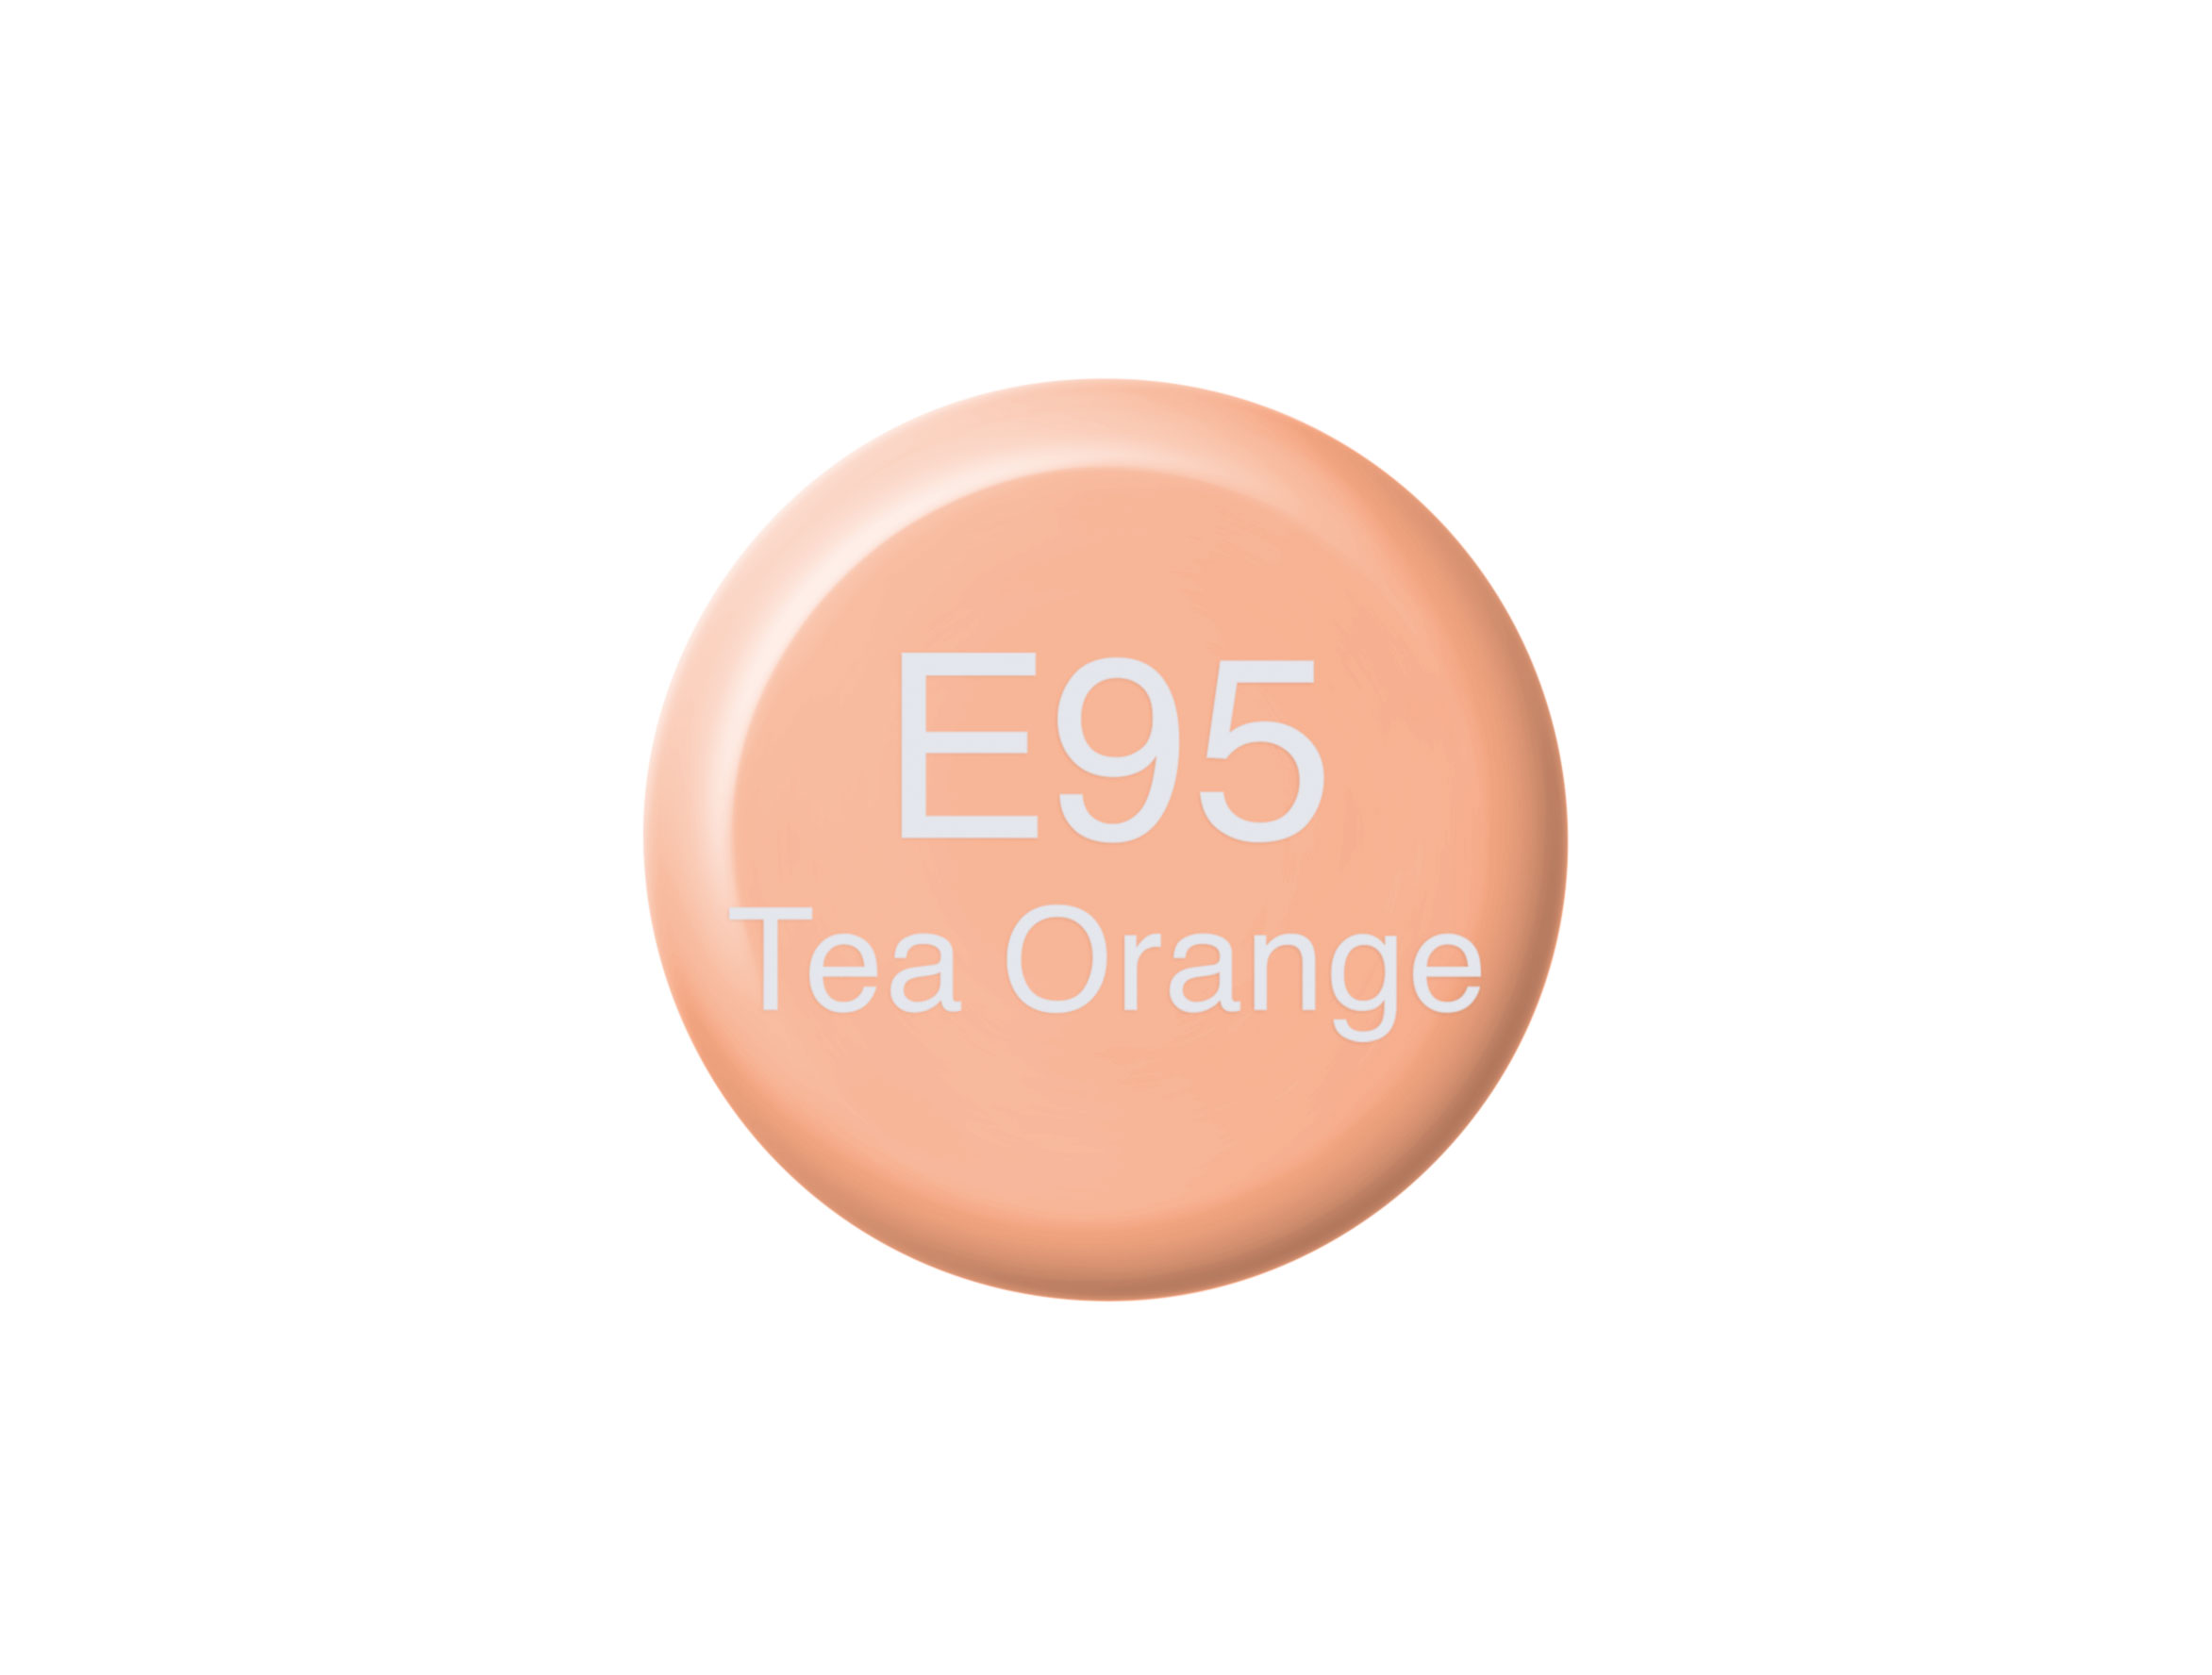 Copic Ink E95 Tea Orange